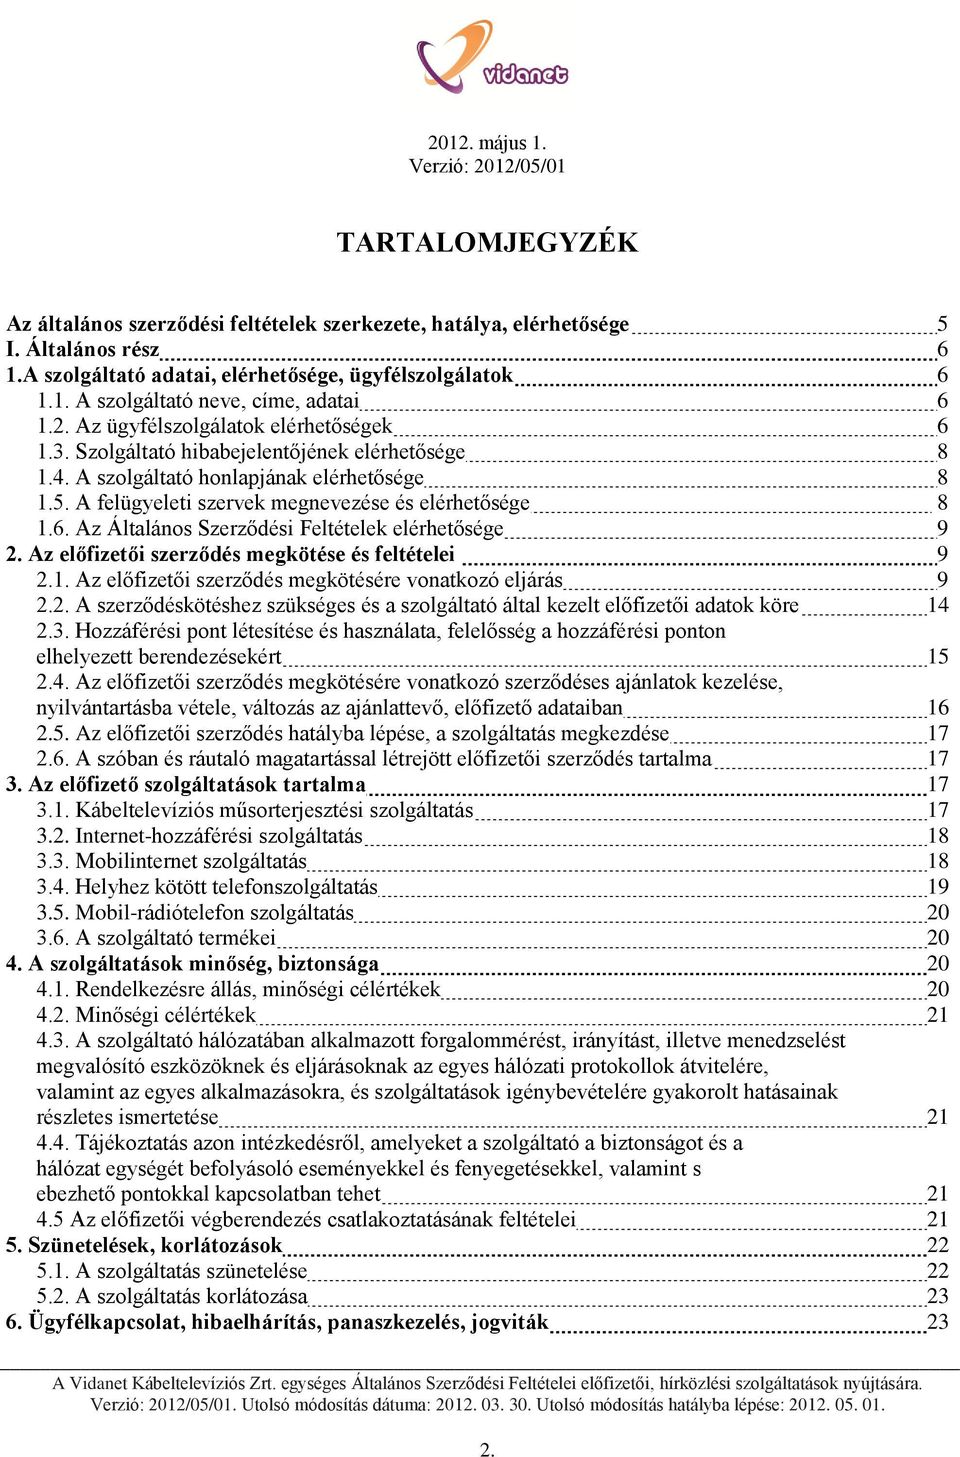 A Vidanet Kábeltelevíziós Szolgáltató Zrt. egységes Általános Szerződési  Feltételei. előfizetői hírközlési szolgáltatások nyújtására - PDF Ingyenes  letöltés